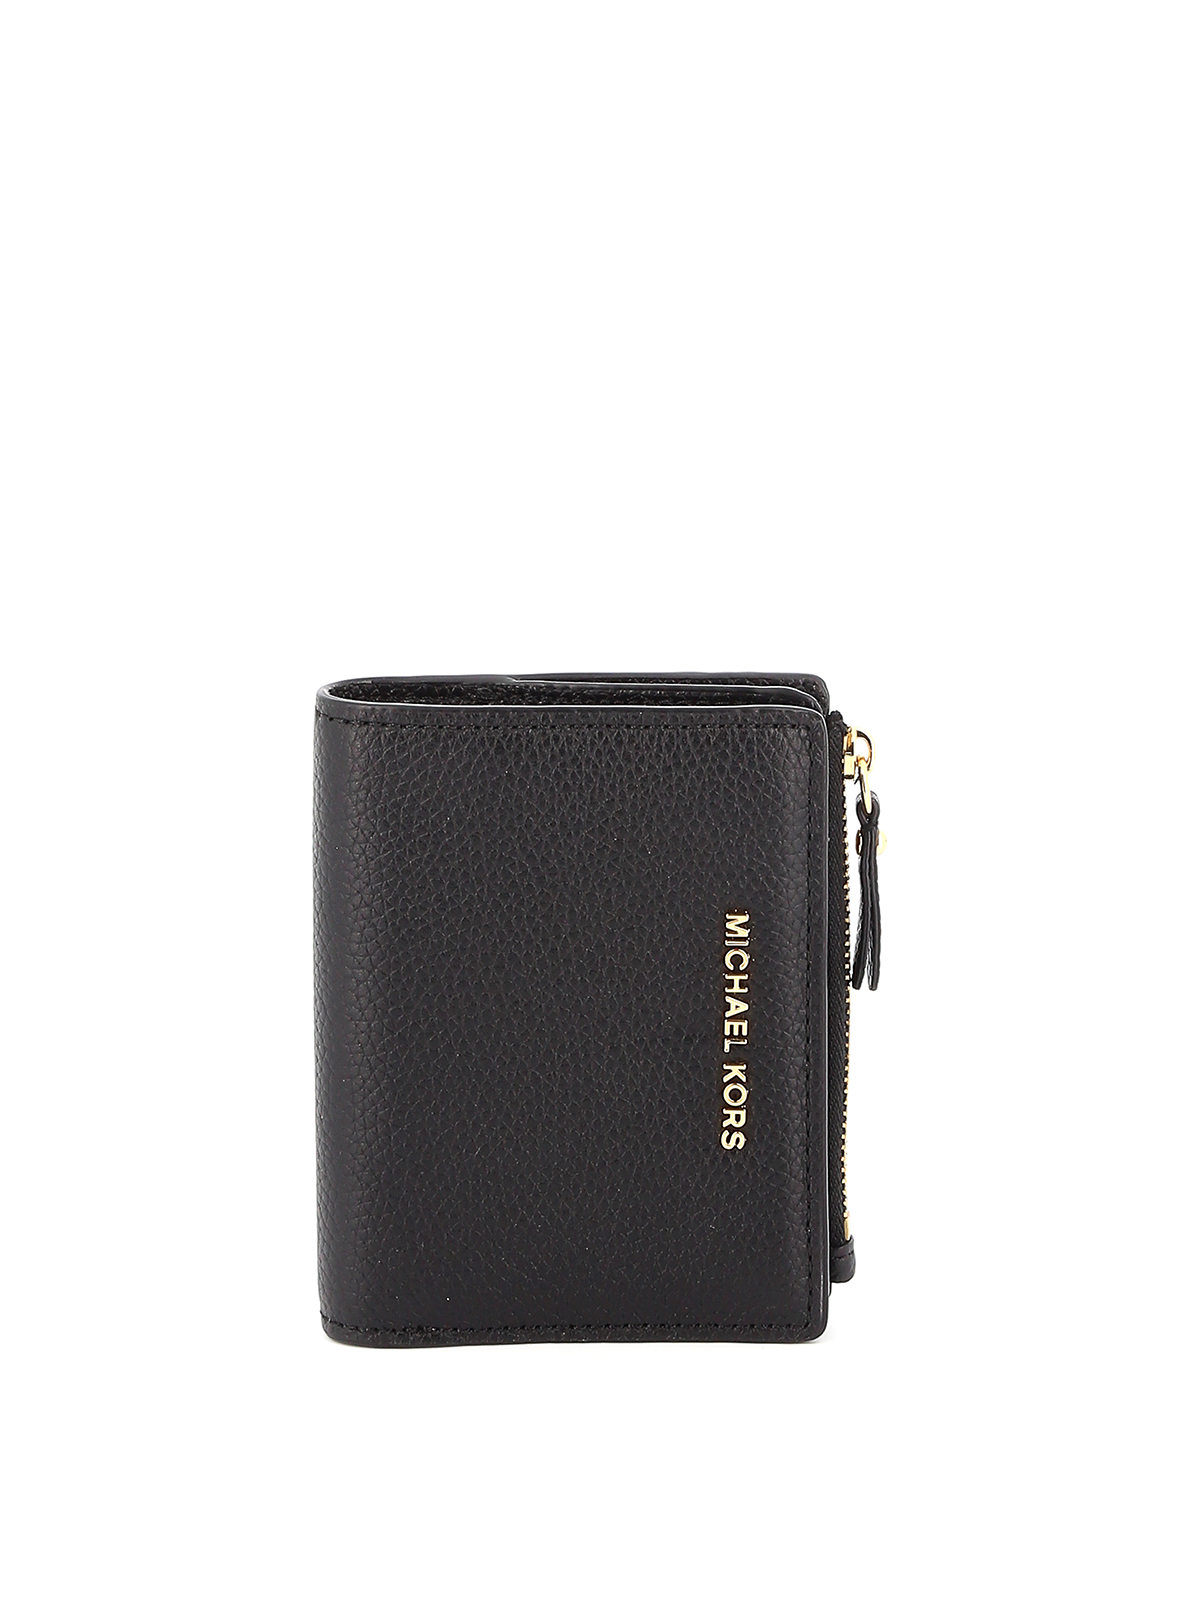 Wallets & purses Michael Kors - Jet Set black bifold wallet - 34F9GJ6F2L001